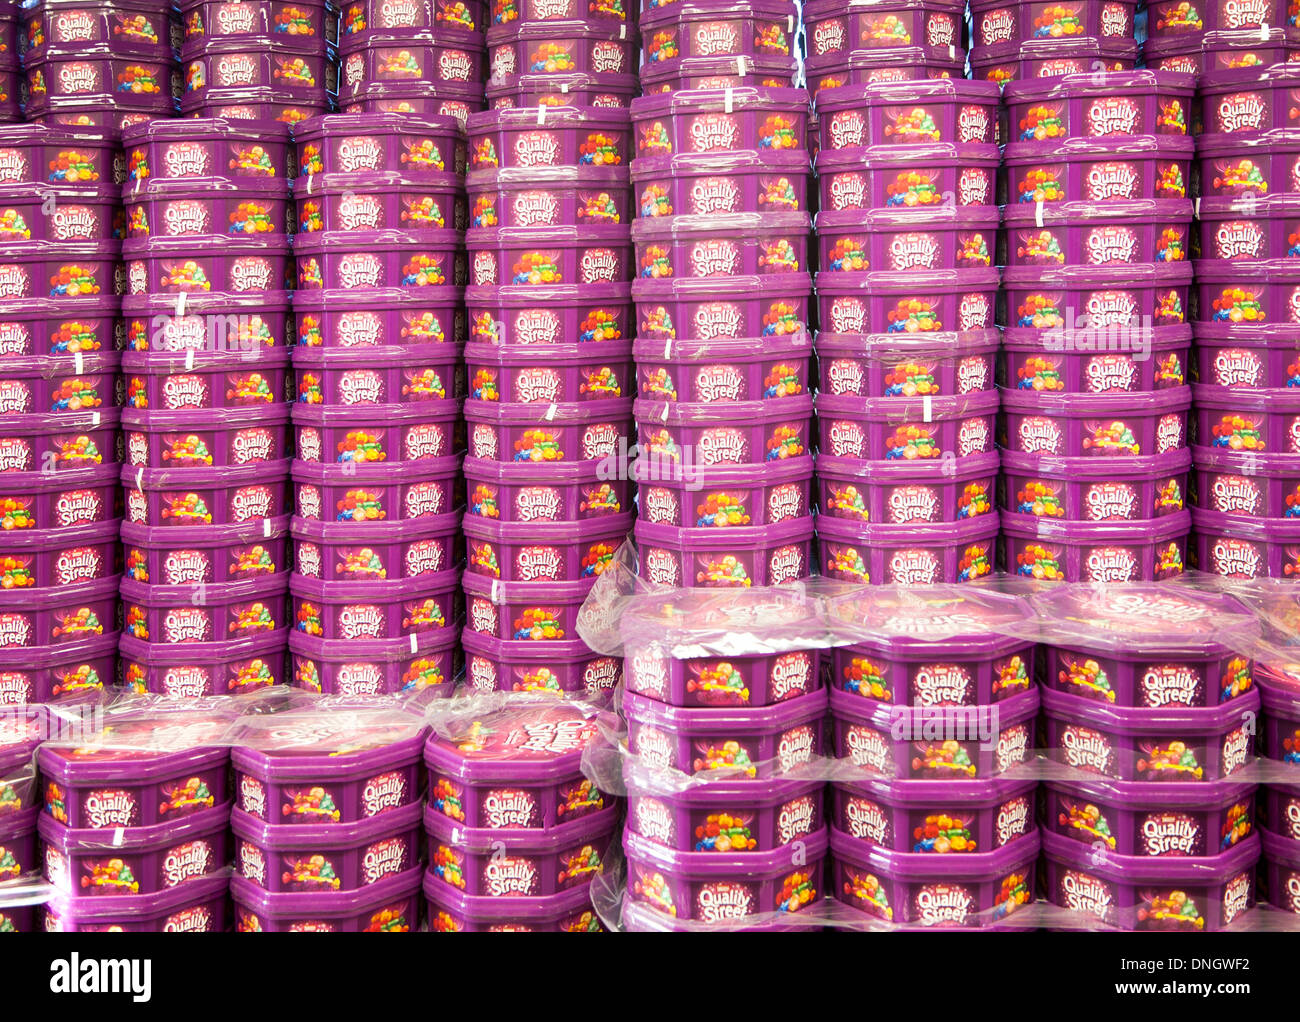 Haufen von Quality Street Schokolade Dosen häuften sich in einem Supermarkt, UK Stockfoto